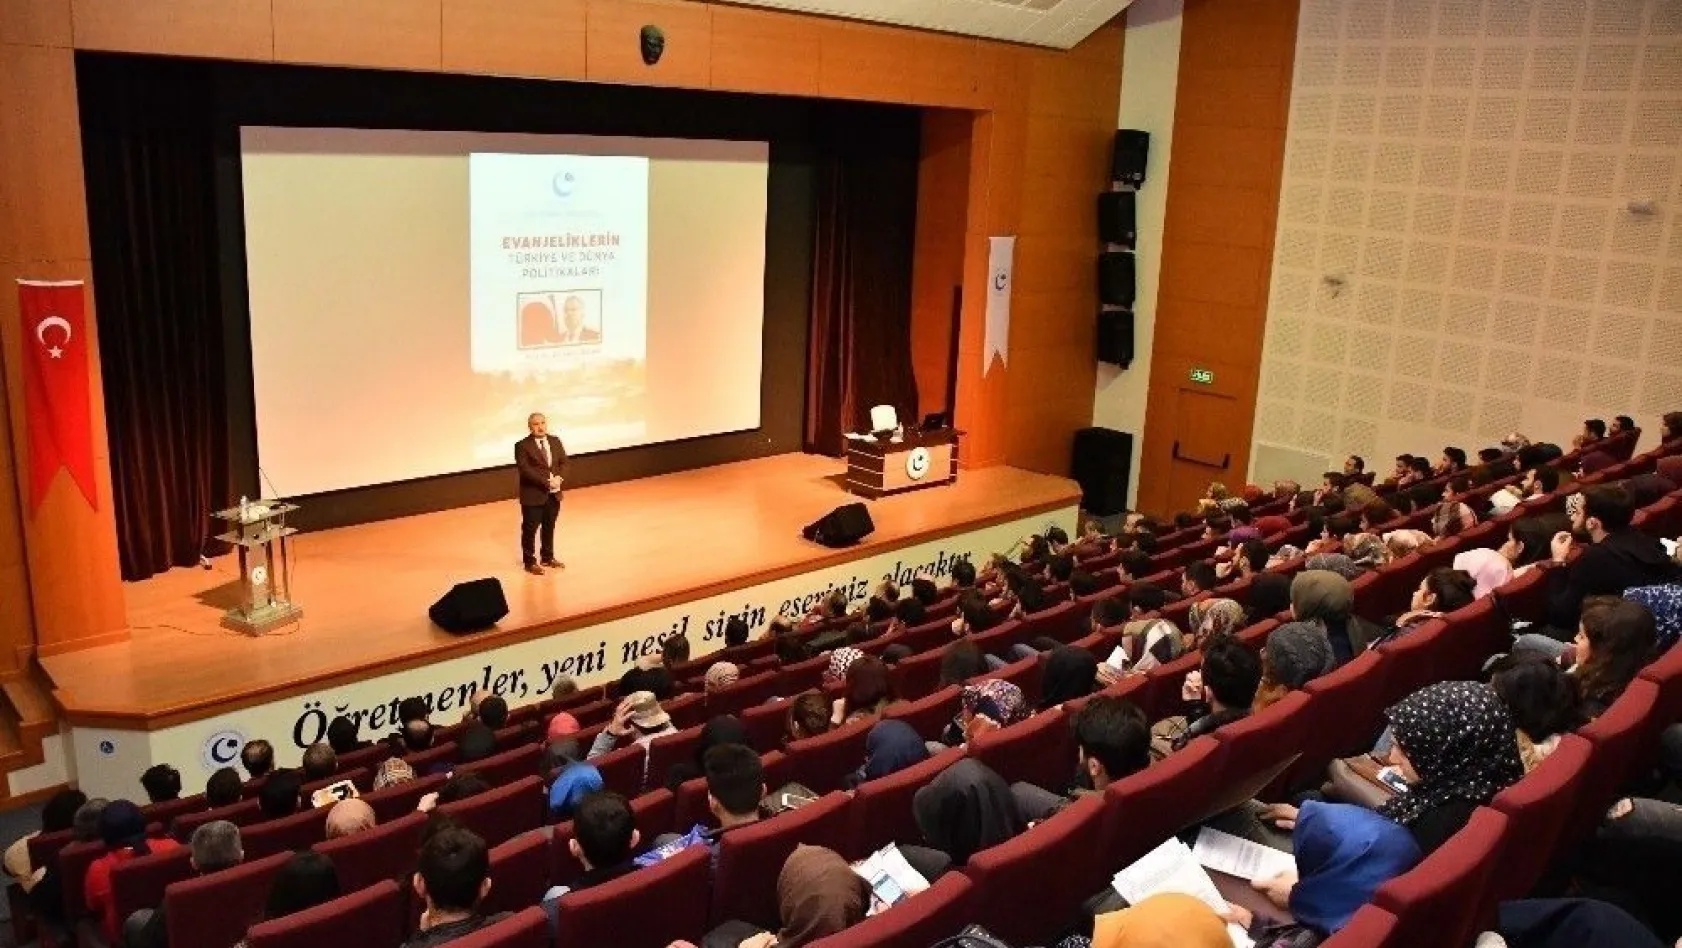 'Evanjeliklerin Türkiye ve Dünya Politikaları' konulu konferans yapıldı
